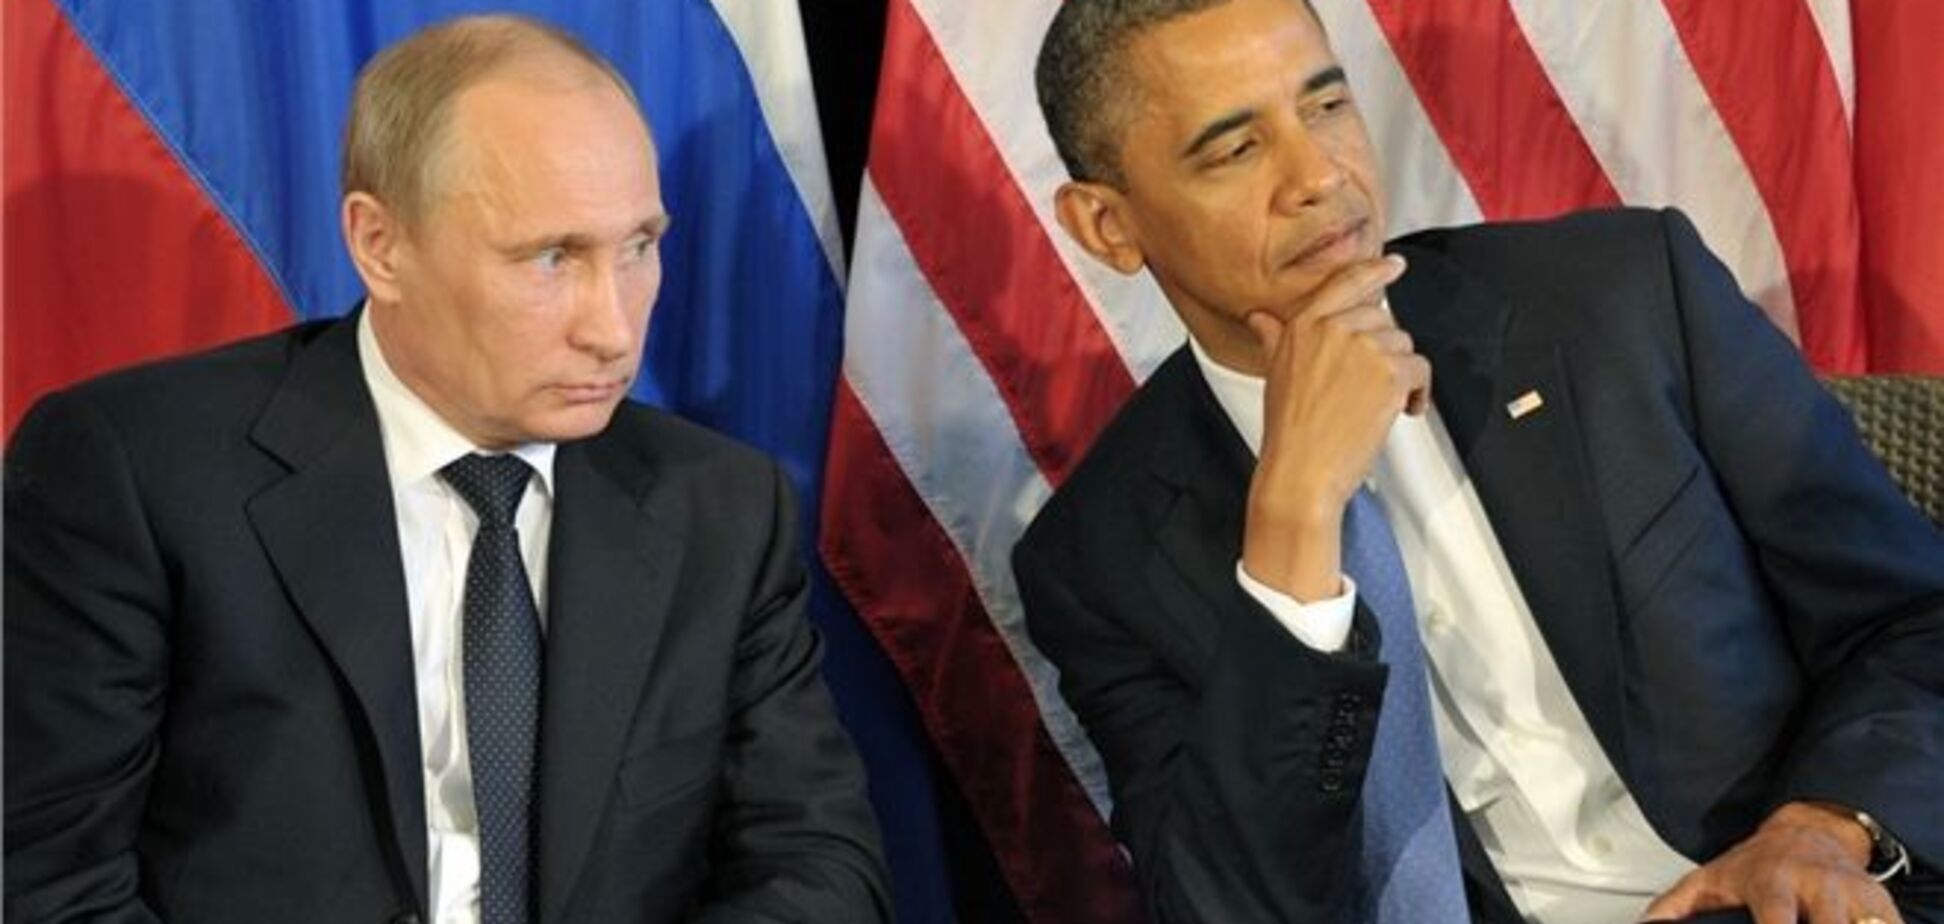 Підсумок переговорів Путіна і Обами щодо Сирії: кожен залишився при своїй думці